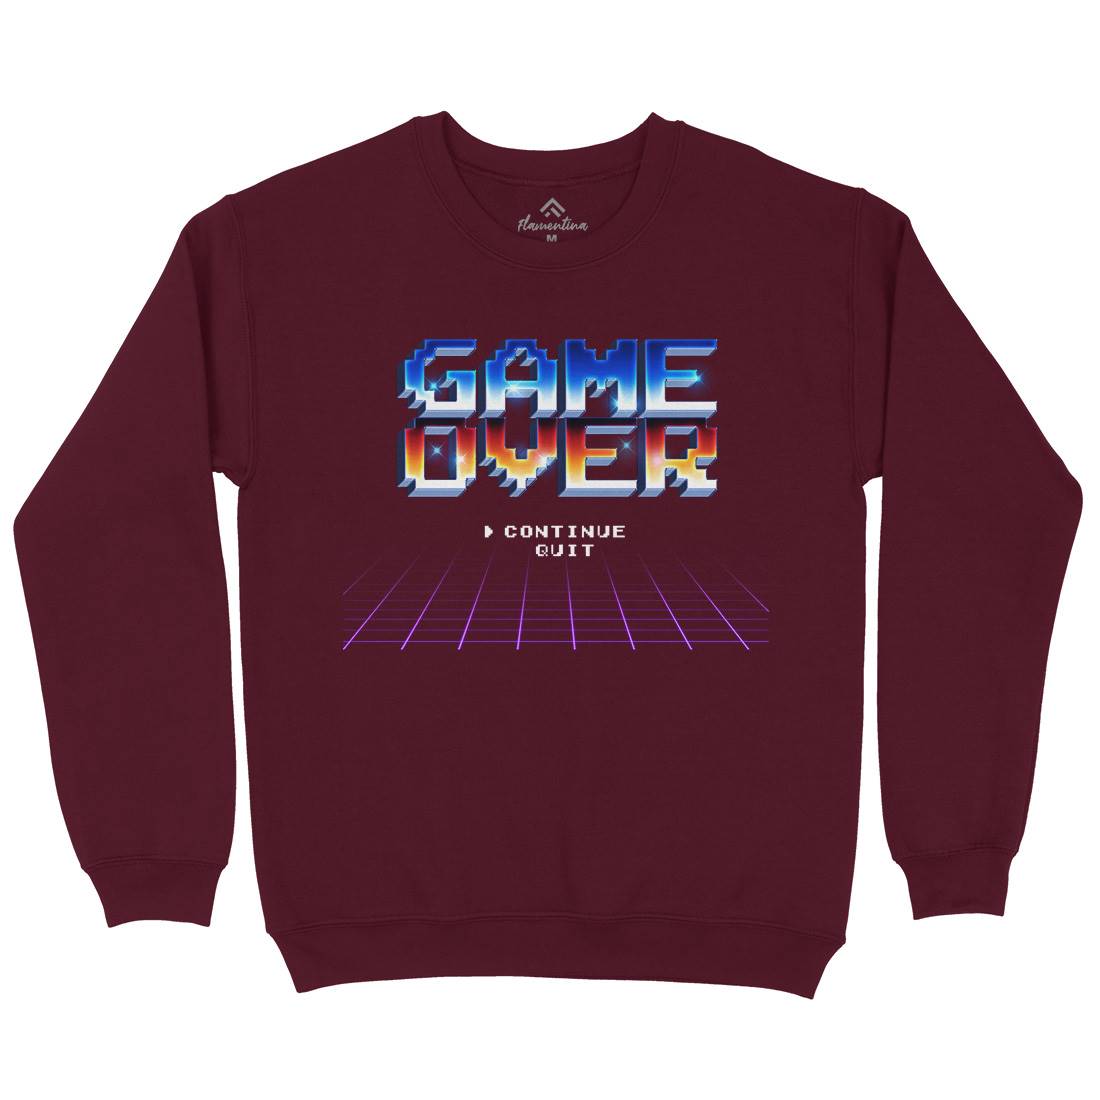 Game Over Kids Crew Neck Sweatshirt Geek B995